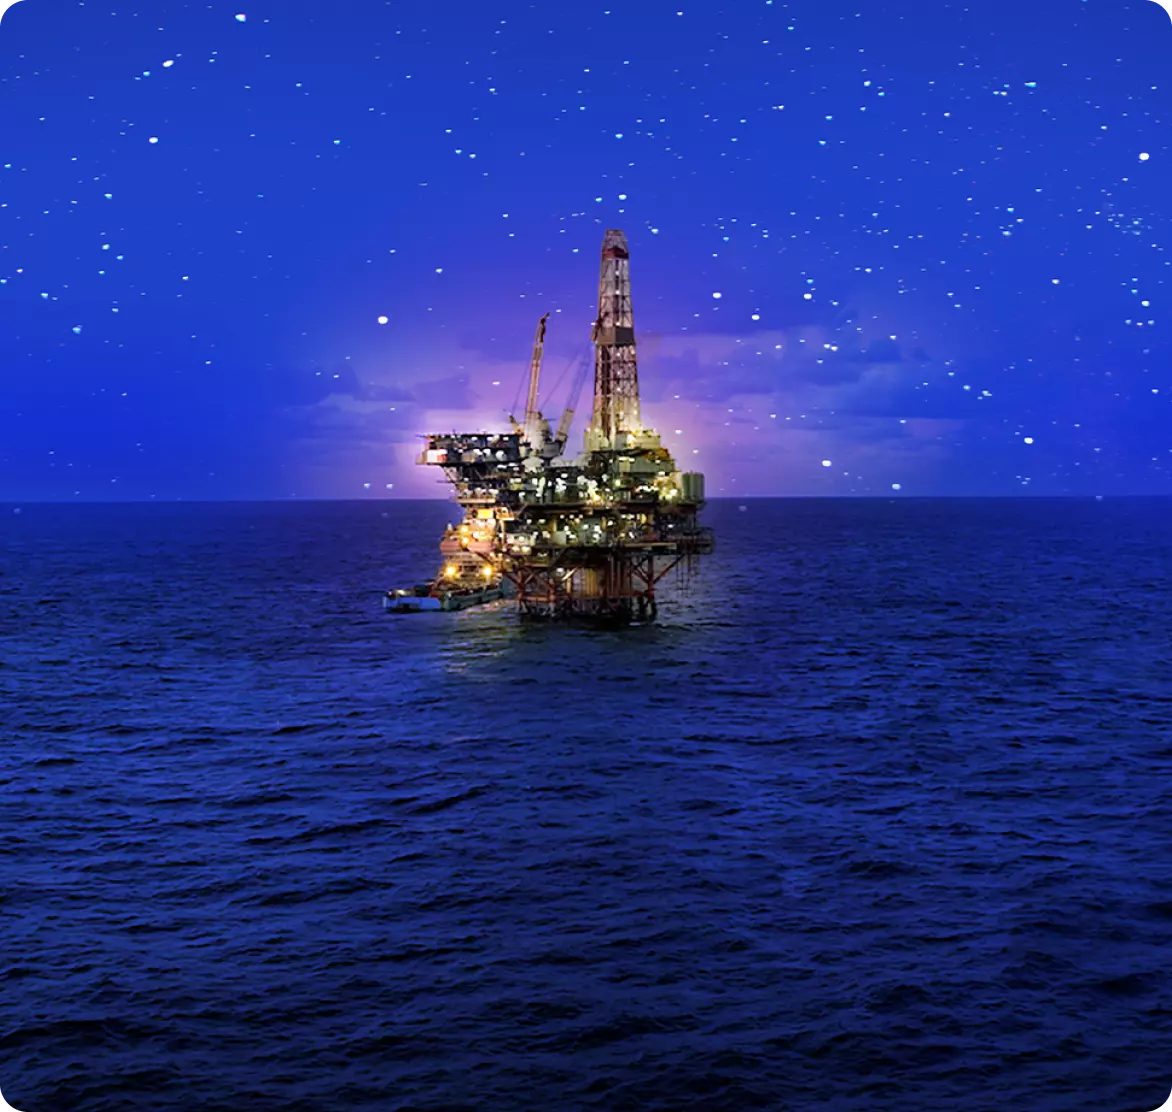 Uma plataforma de petróleo no meio do oceano a noite